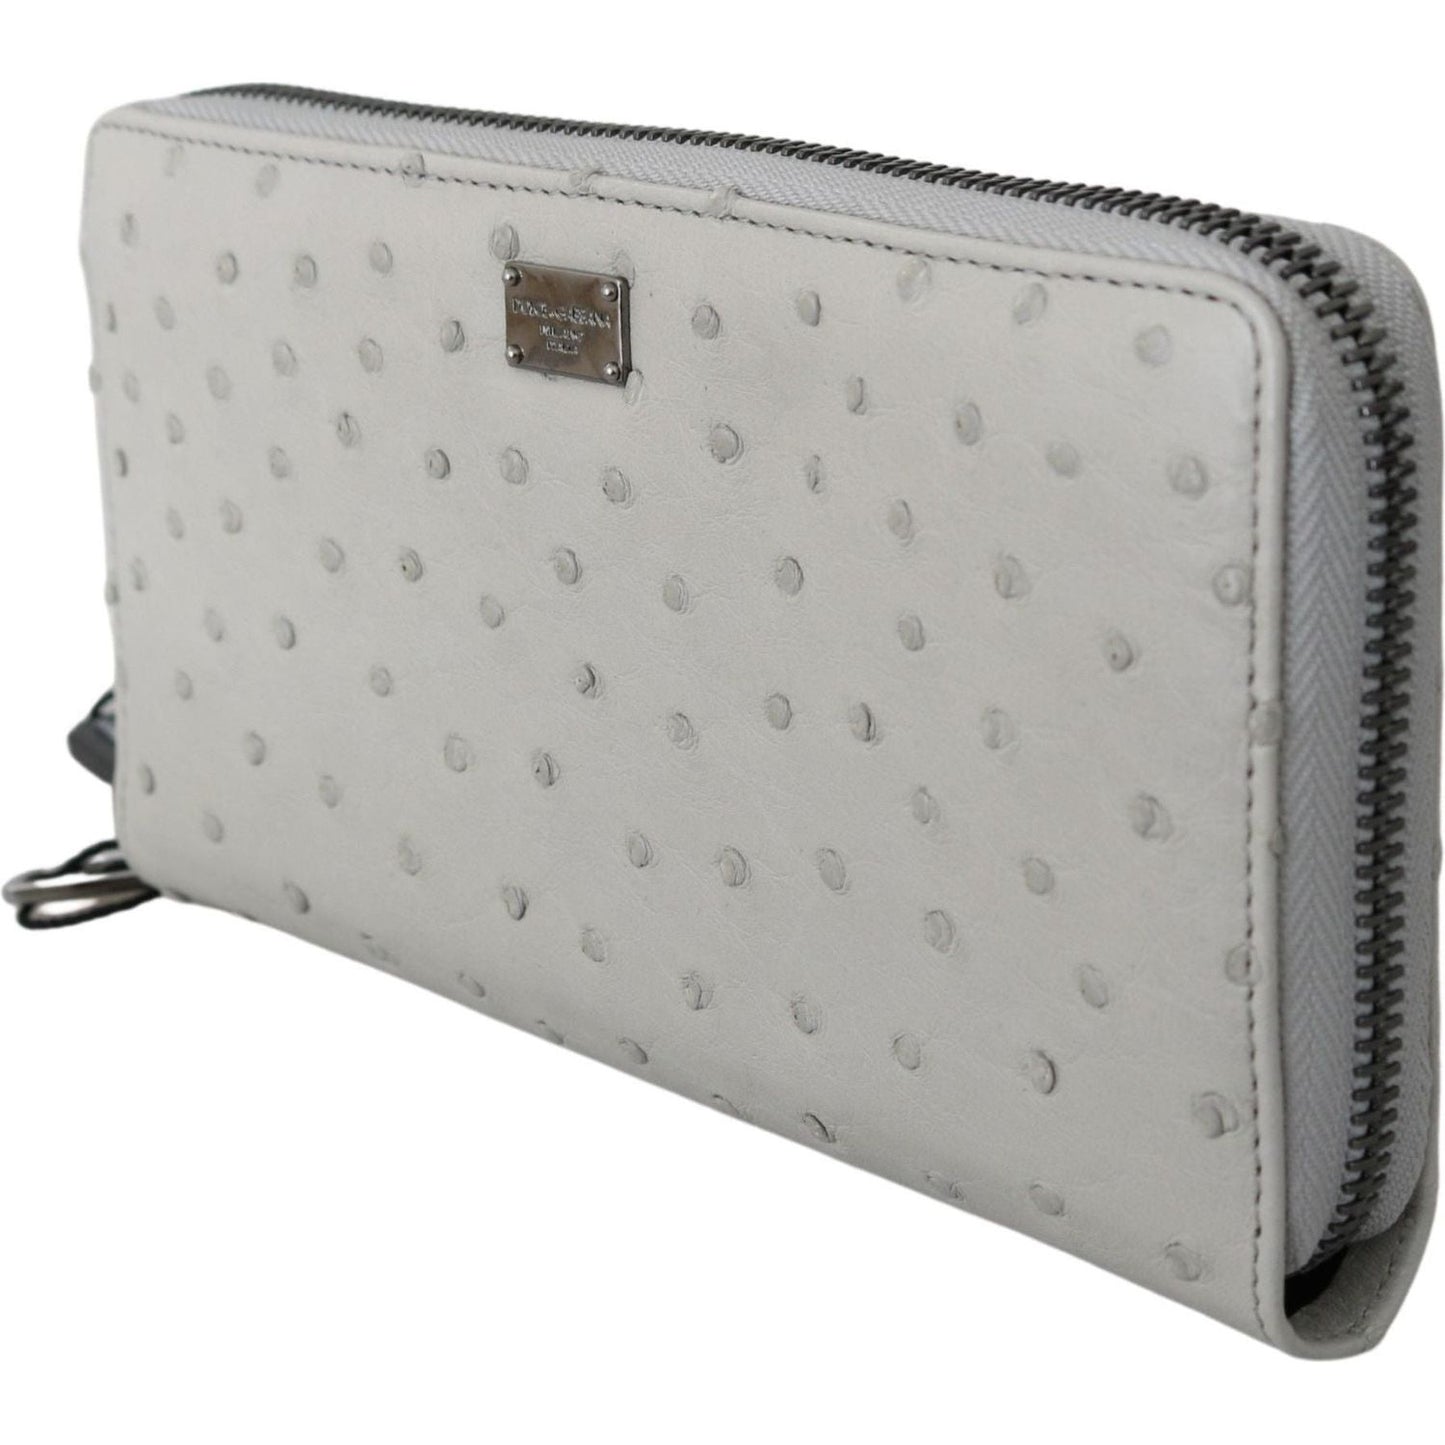 Dolce & Gabbana Elegant Ostrich Leather Continental Wallet white-ostrich-leather-continental-mens-clutch-wallet Clutch IMG_4324-873cc79c-501.jpg